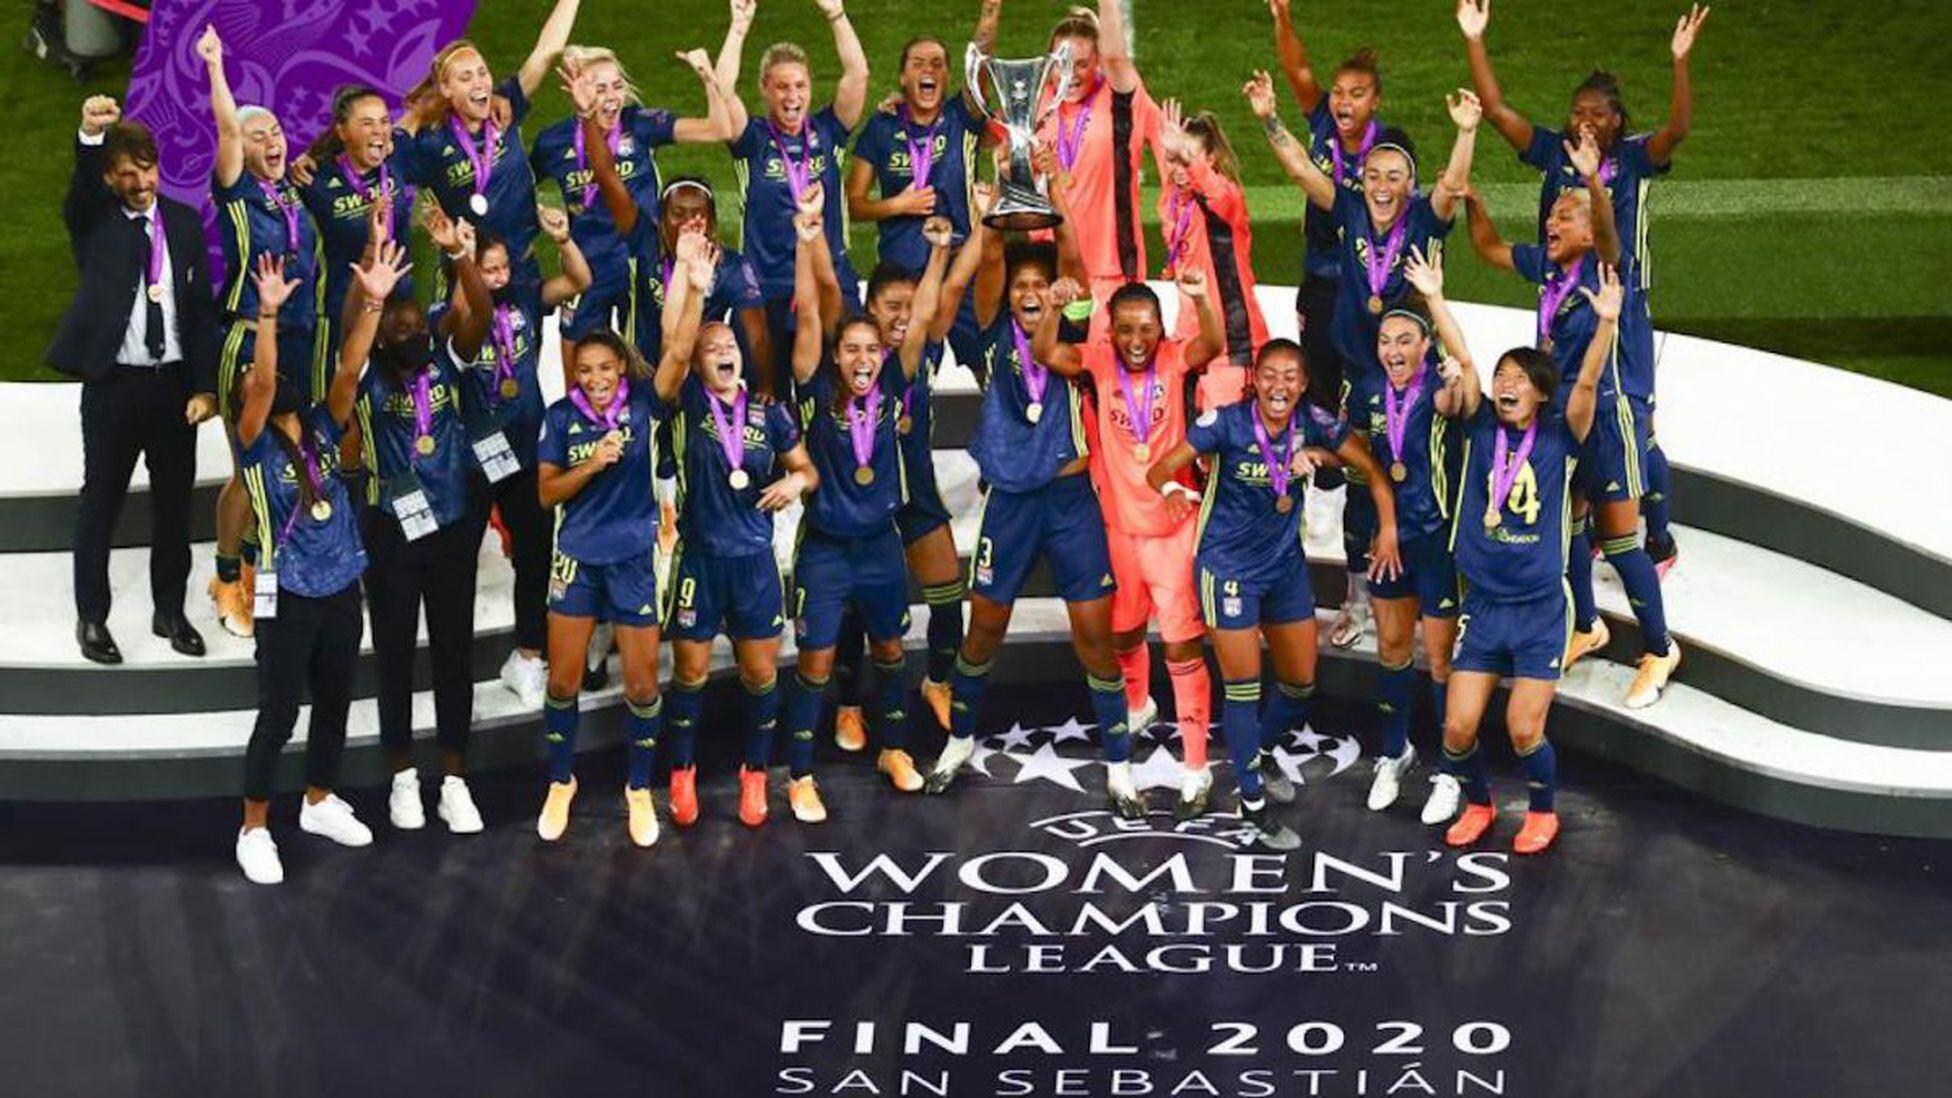 ¿Qué equipo femenino ganó la mayoría de las campeones?